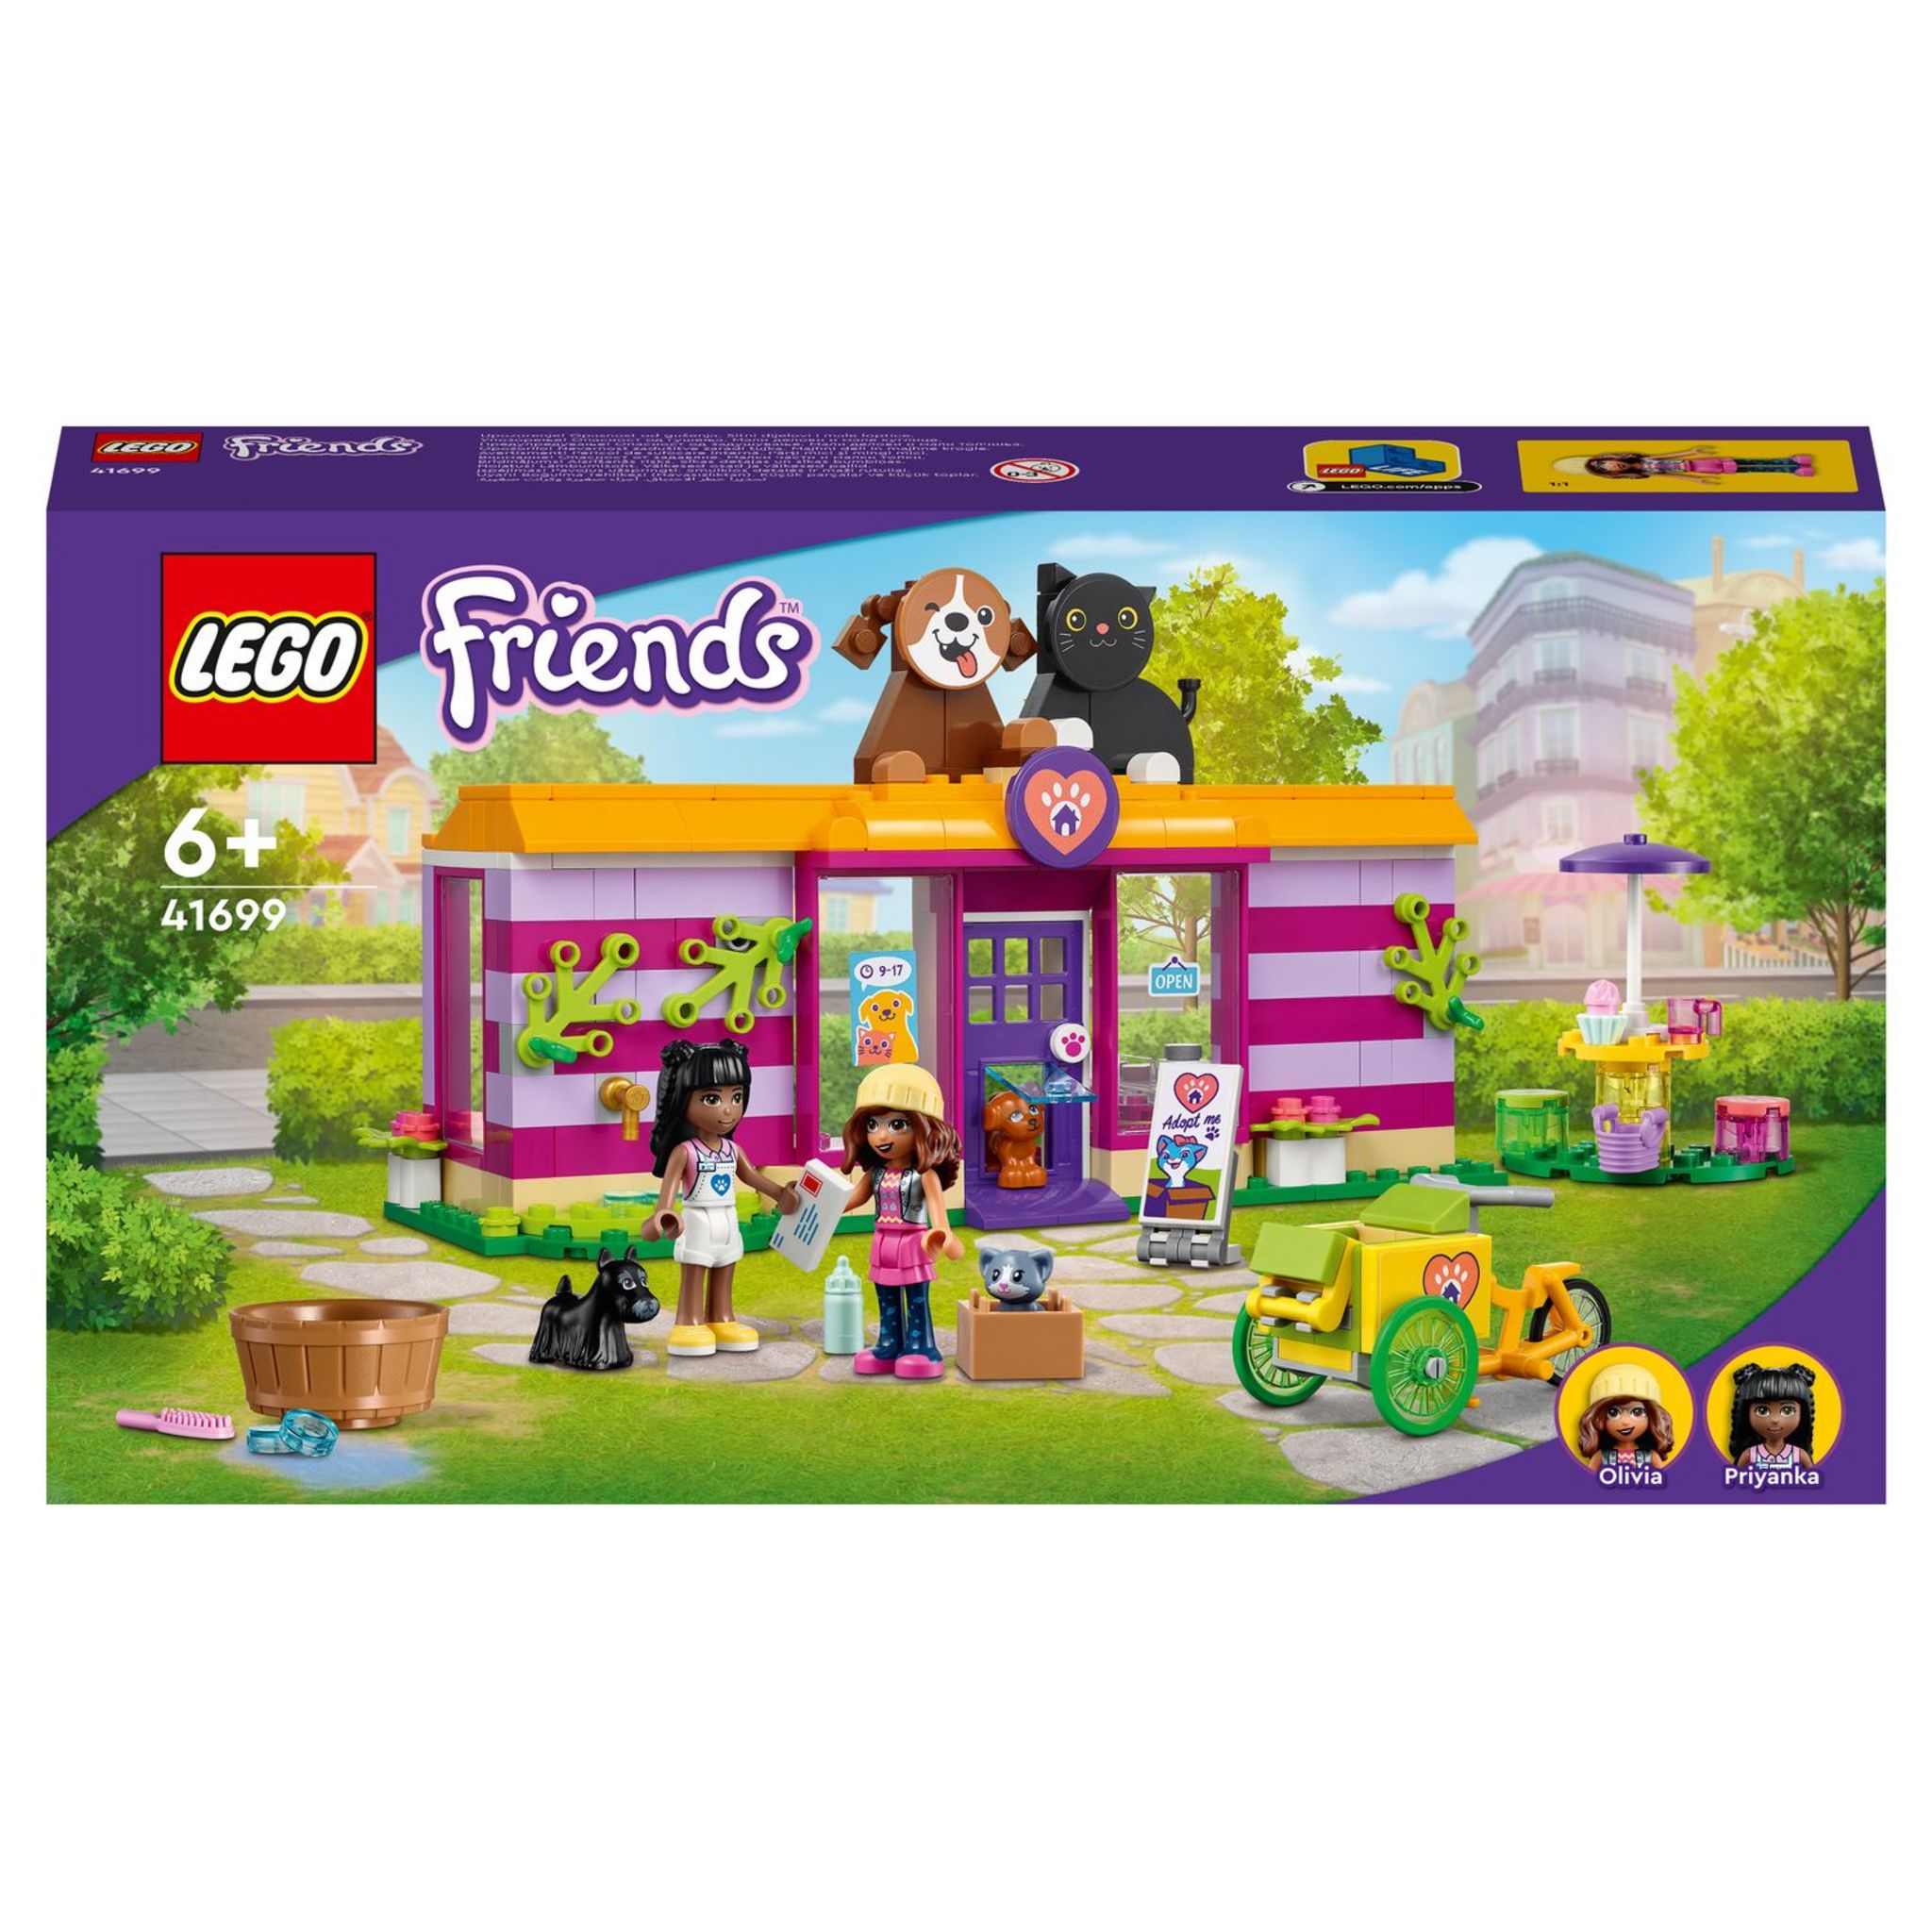 LEGO Friends 41727 pas cher, Le centre de sauvetage canin